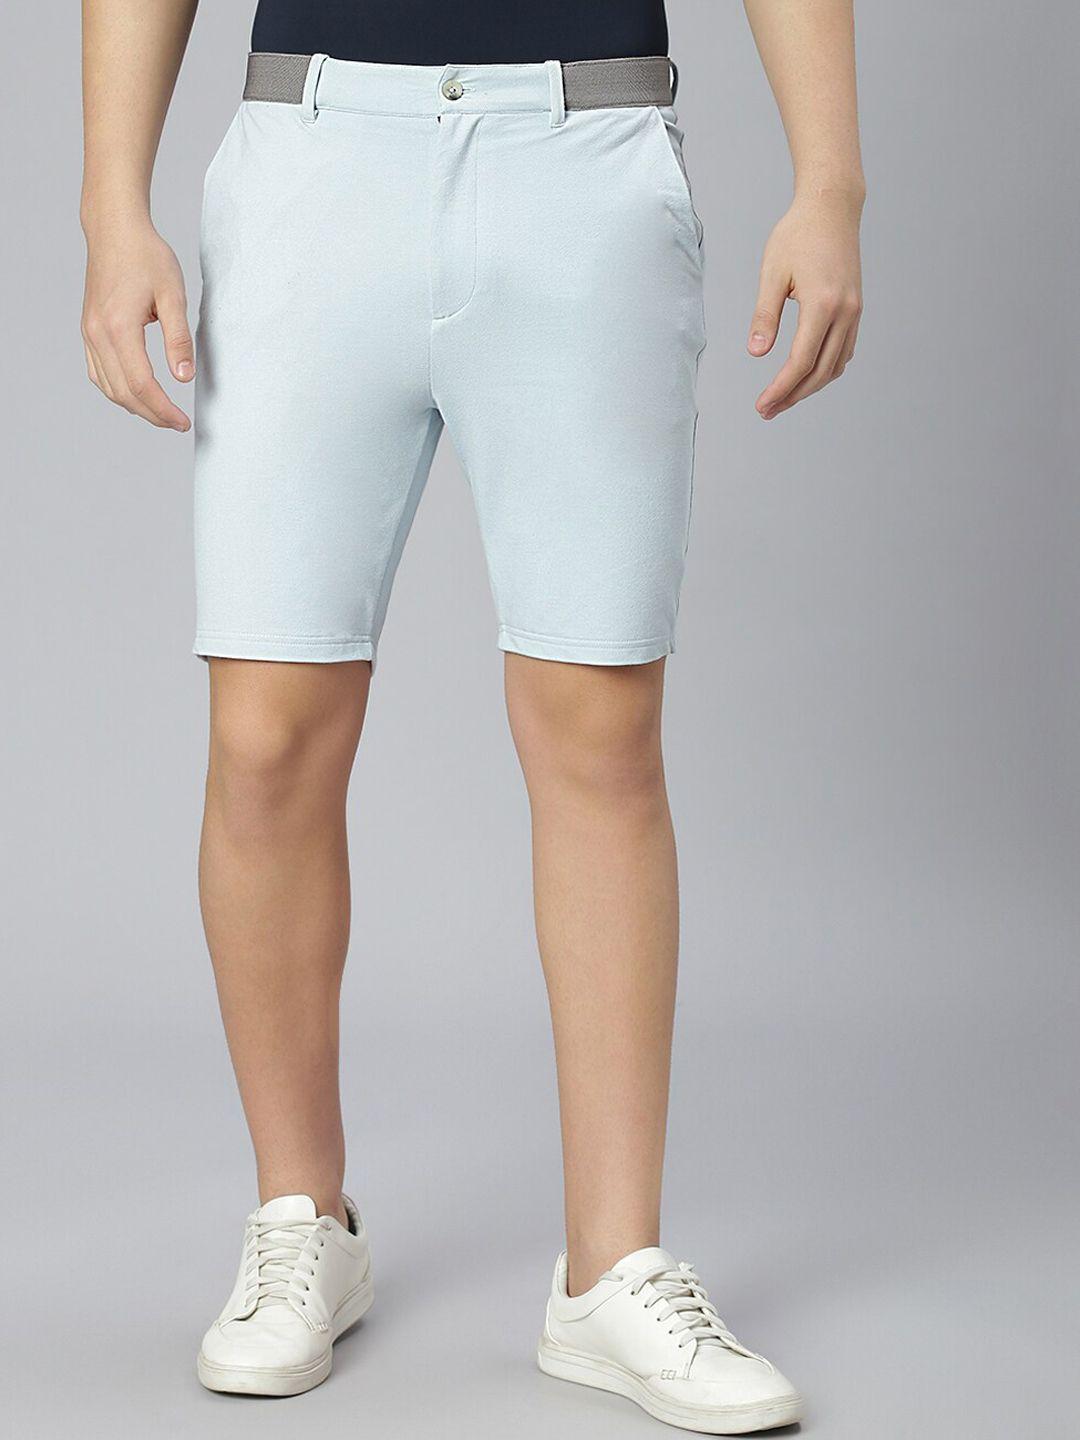 slowave men high-rise cotton shorts